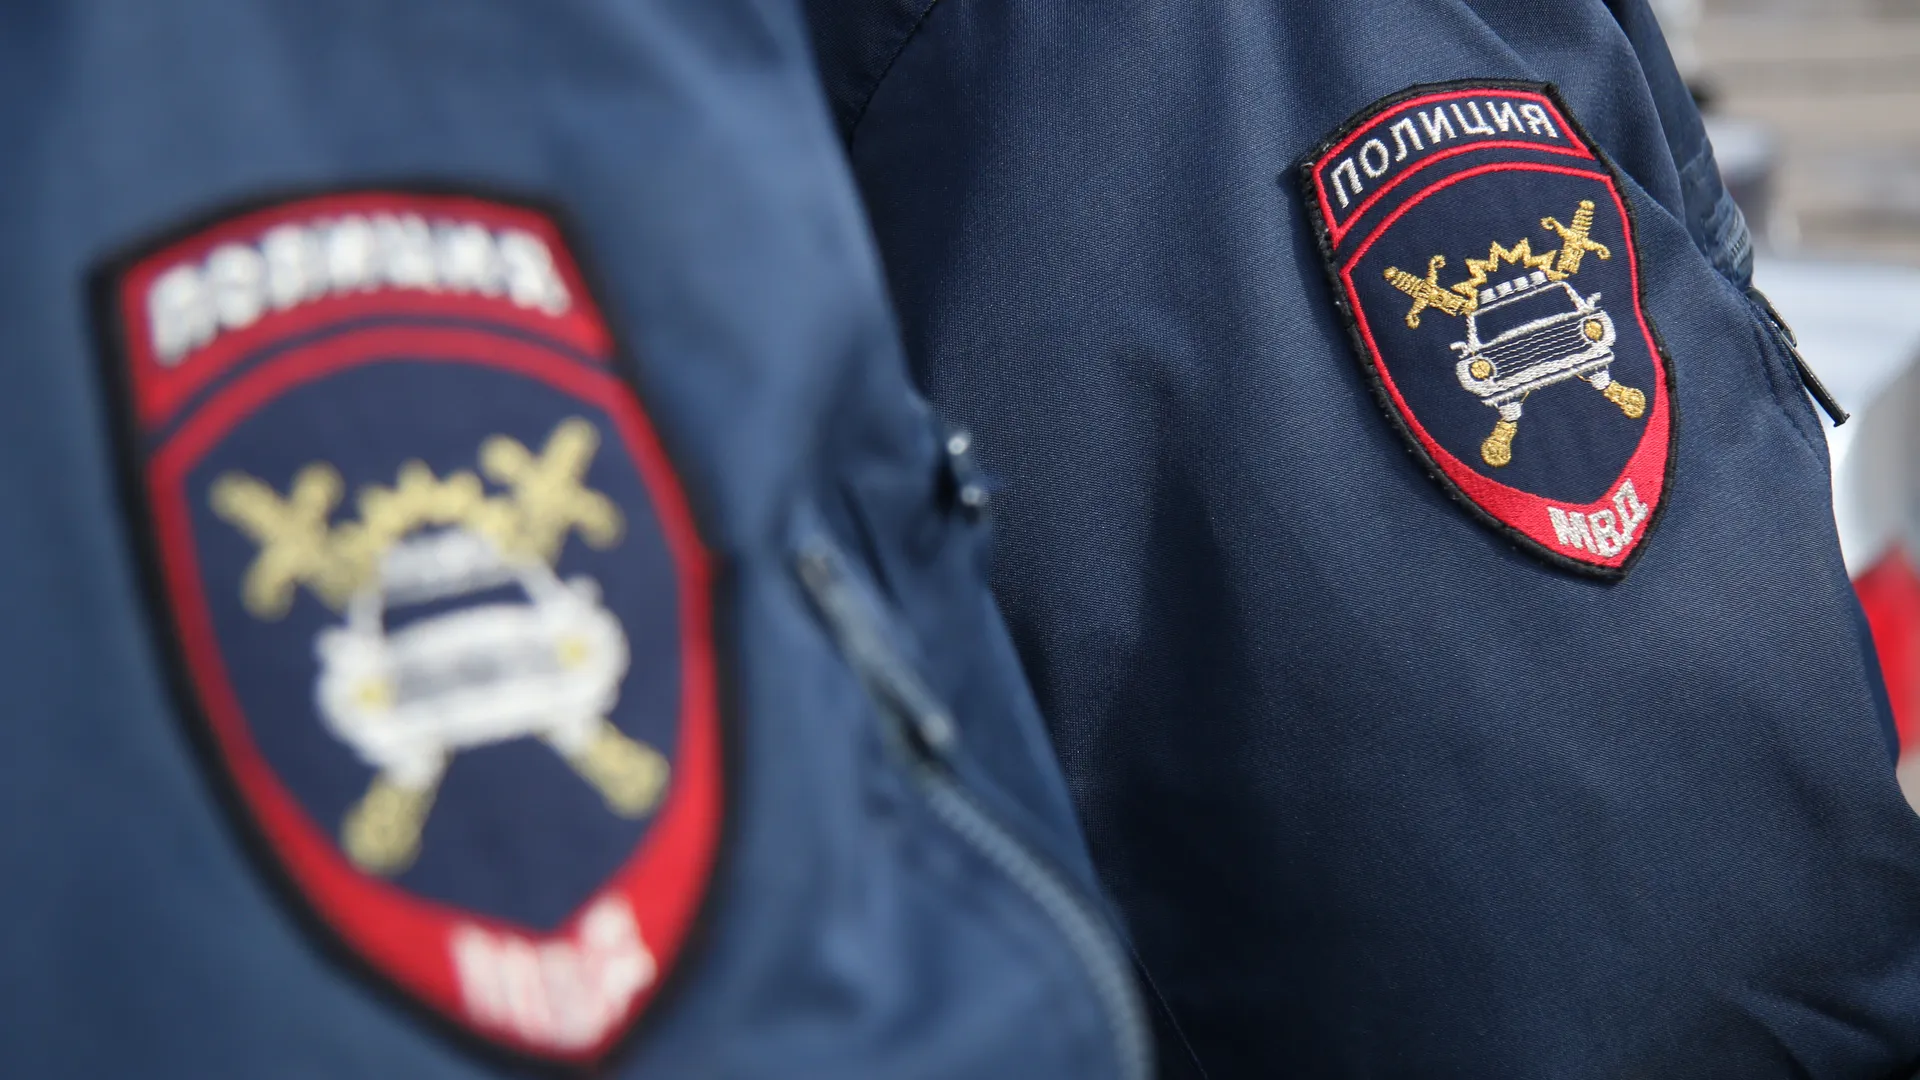 Жительница Петербурга месяц хранила тело своего бывшего сожителя на балконе